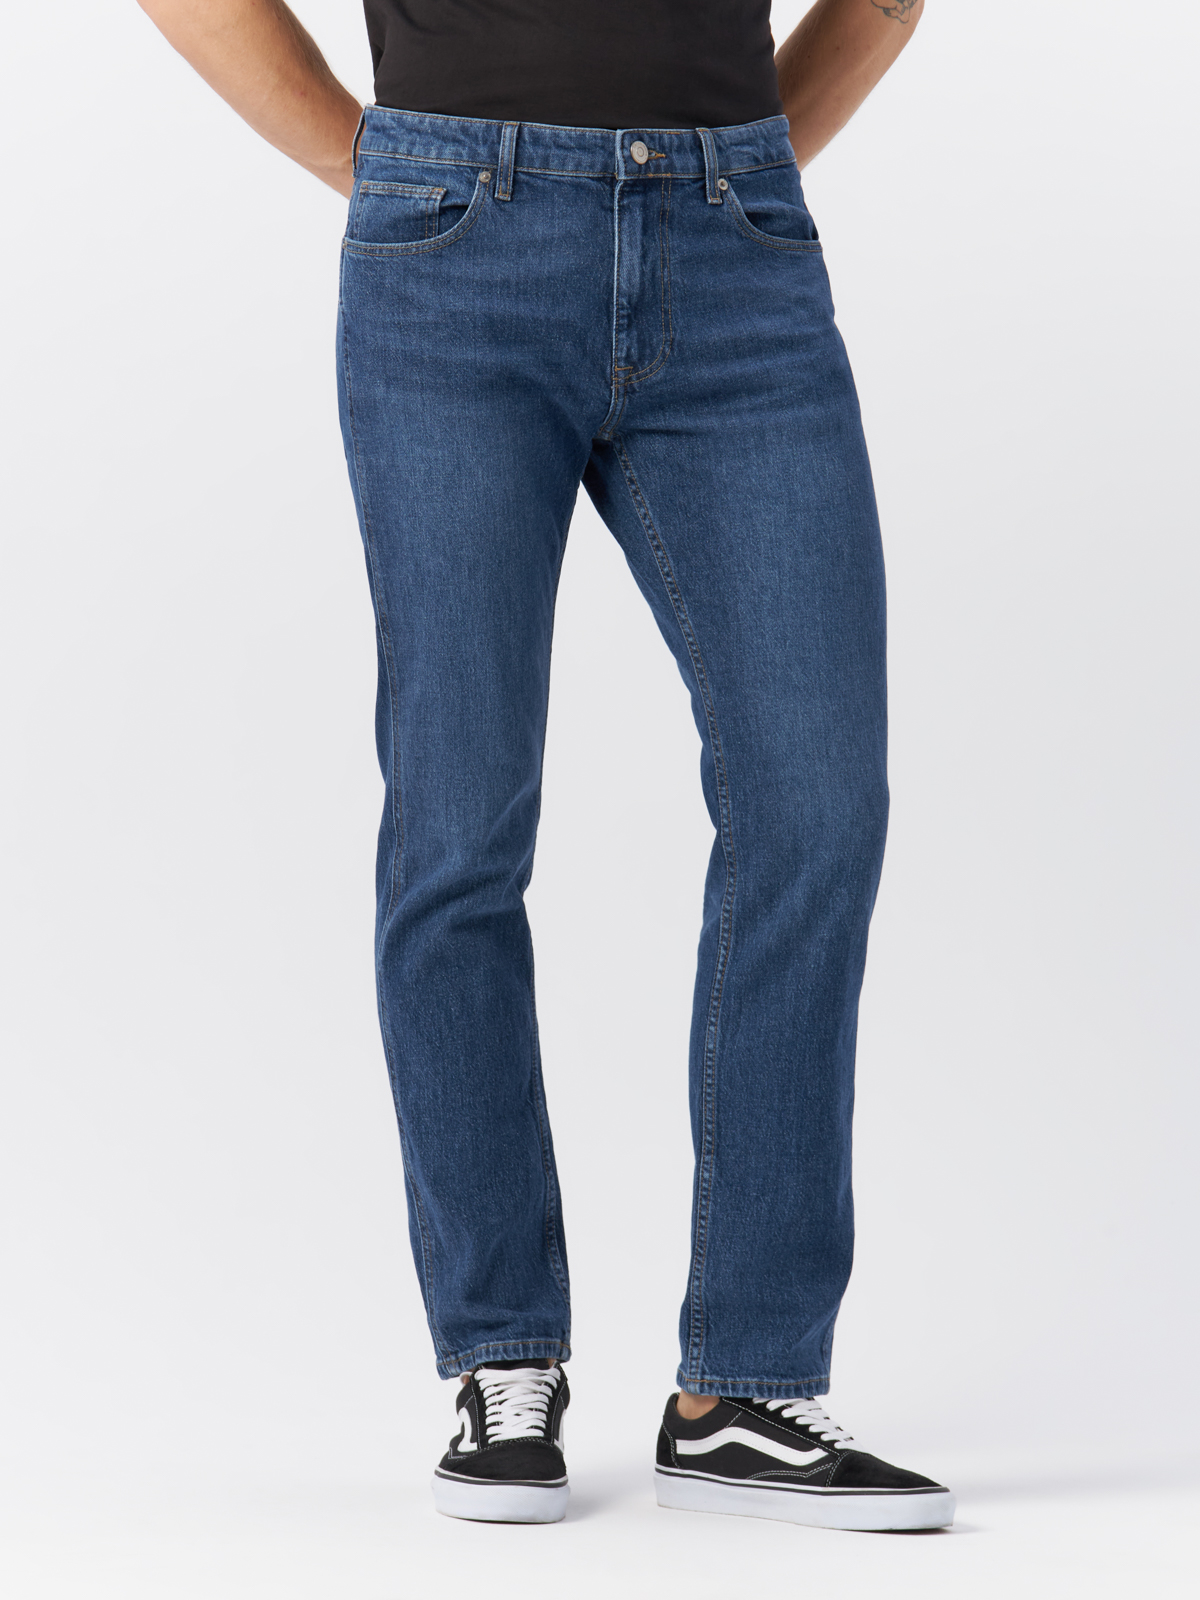 Джинсы Cross Jeans для мужчин, C 132-071, размер 32-32, синие